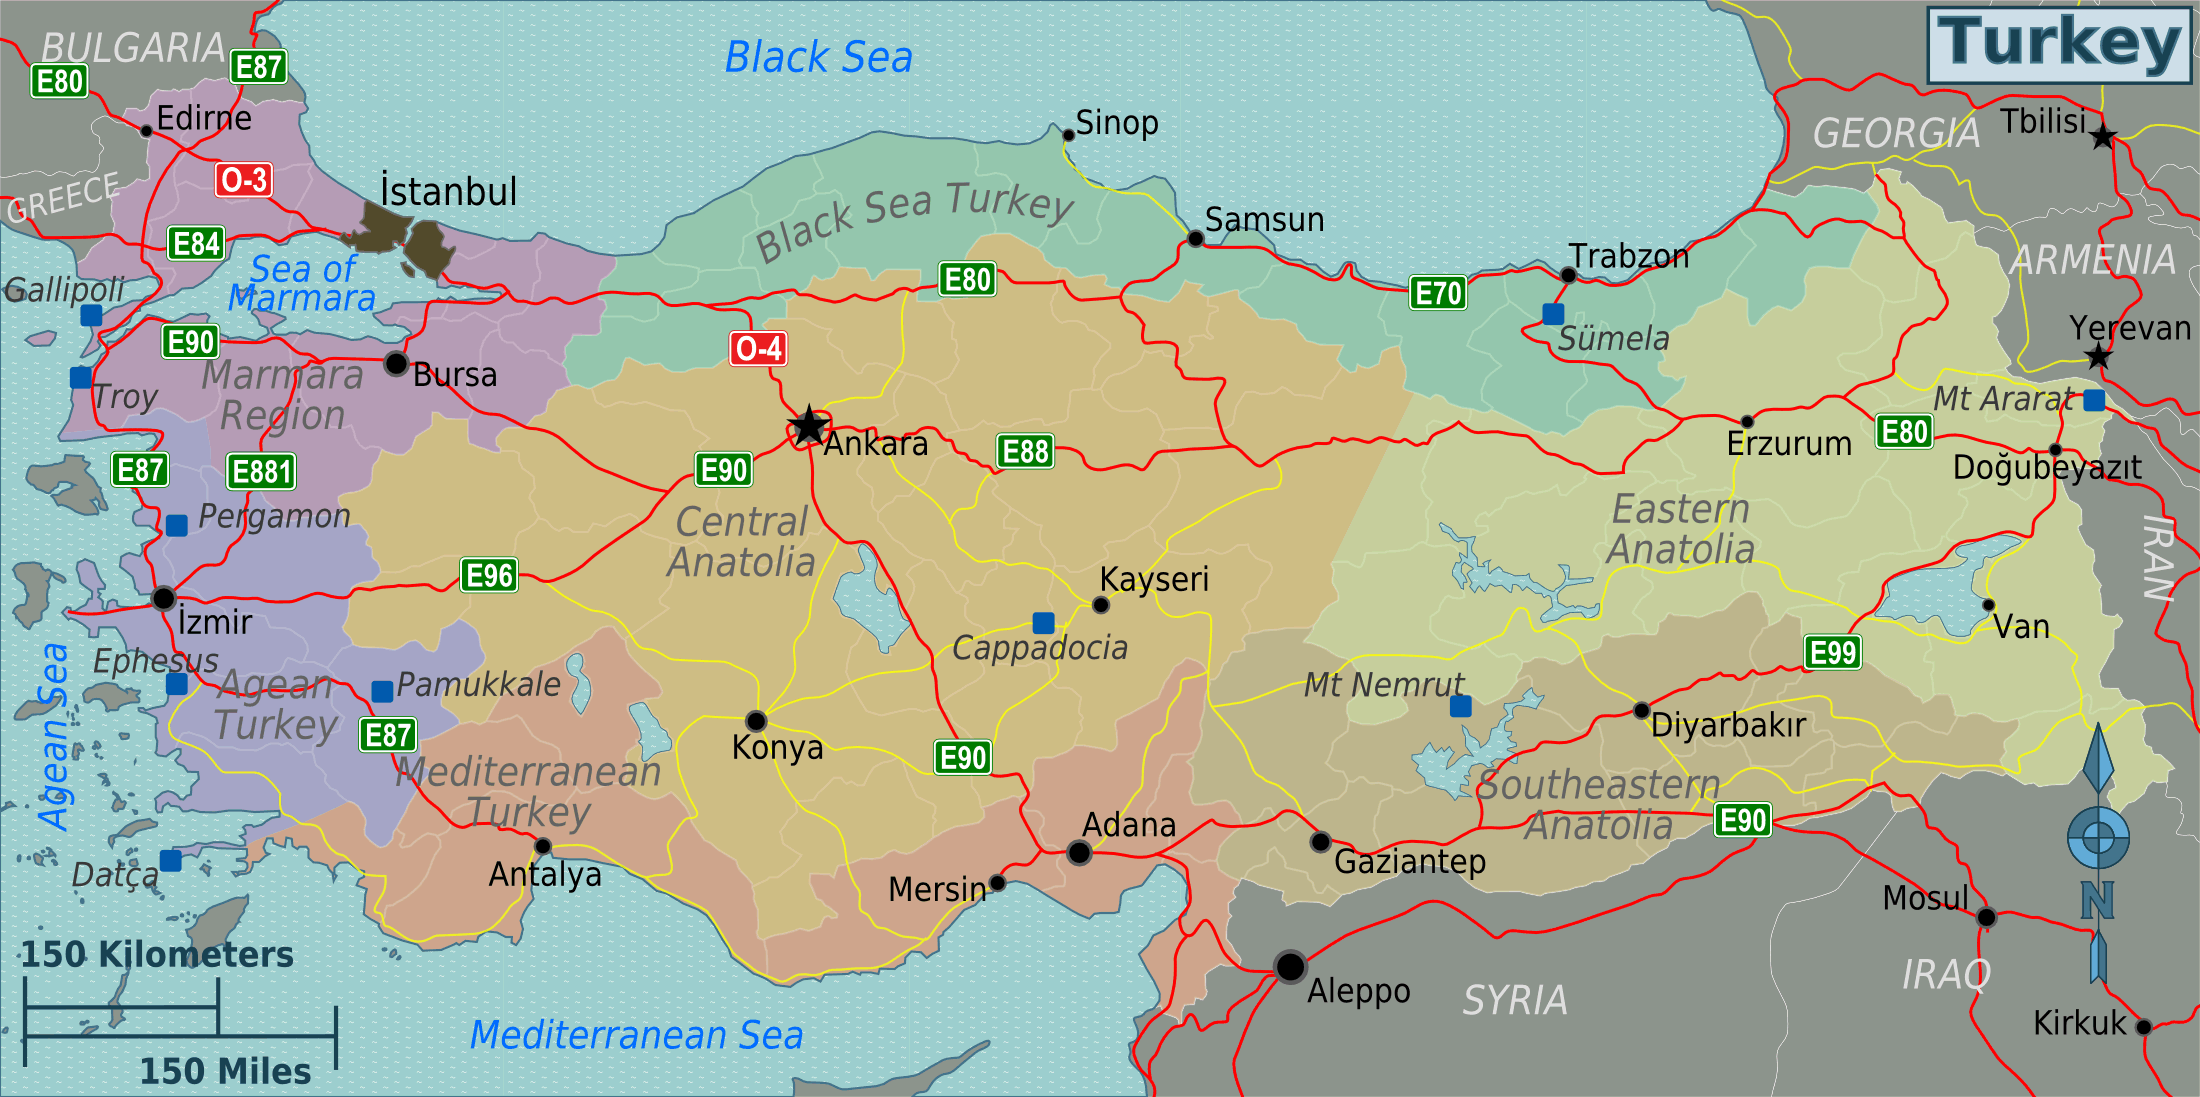 turkiye_bolgeler_harita.png